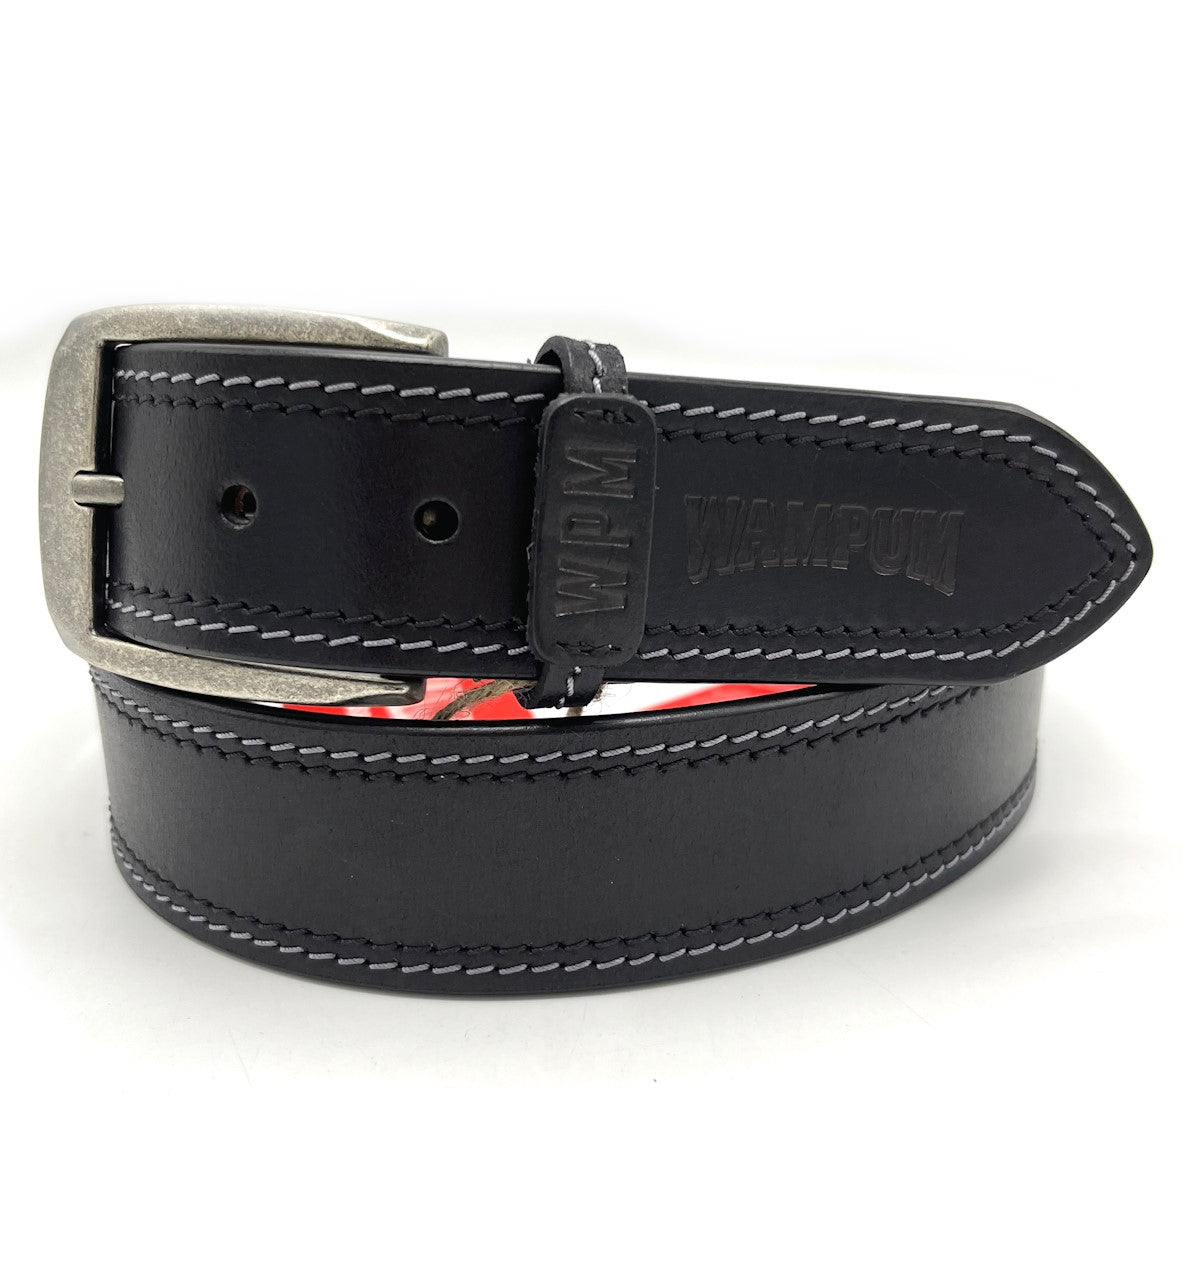 Genuine leather belt, Brand Wampum, art. DK473/40